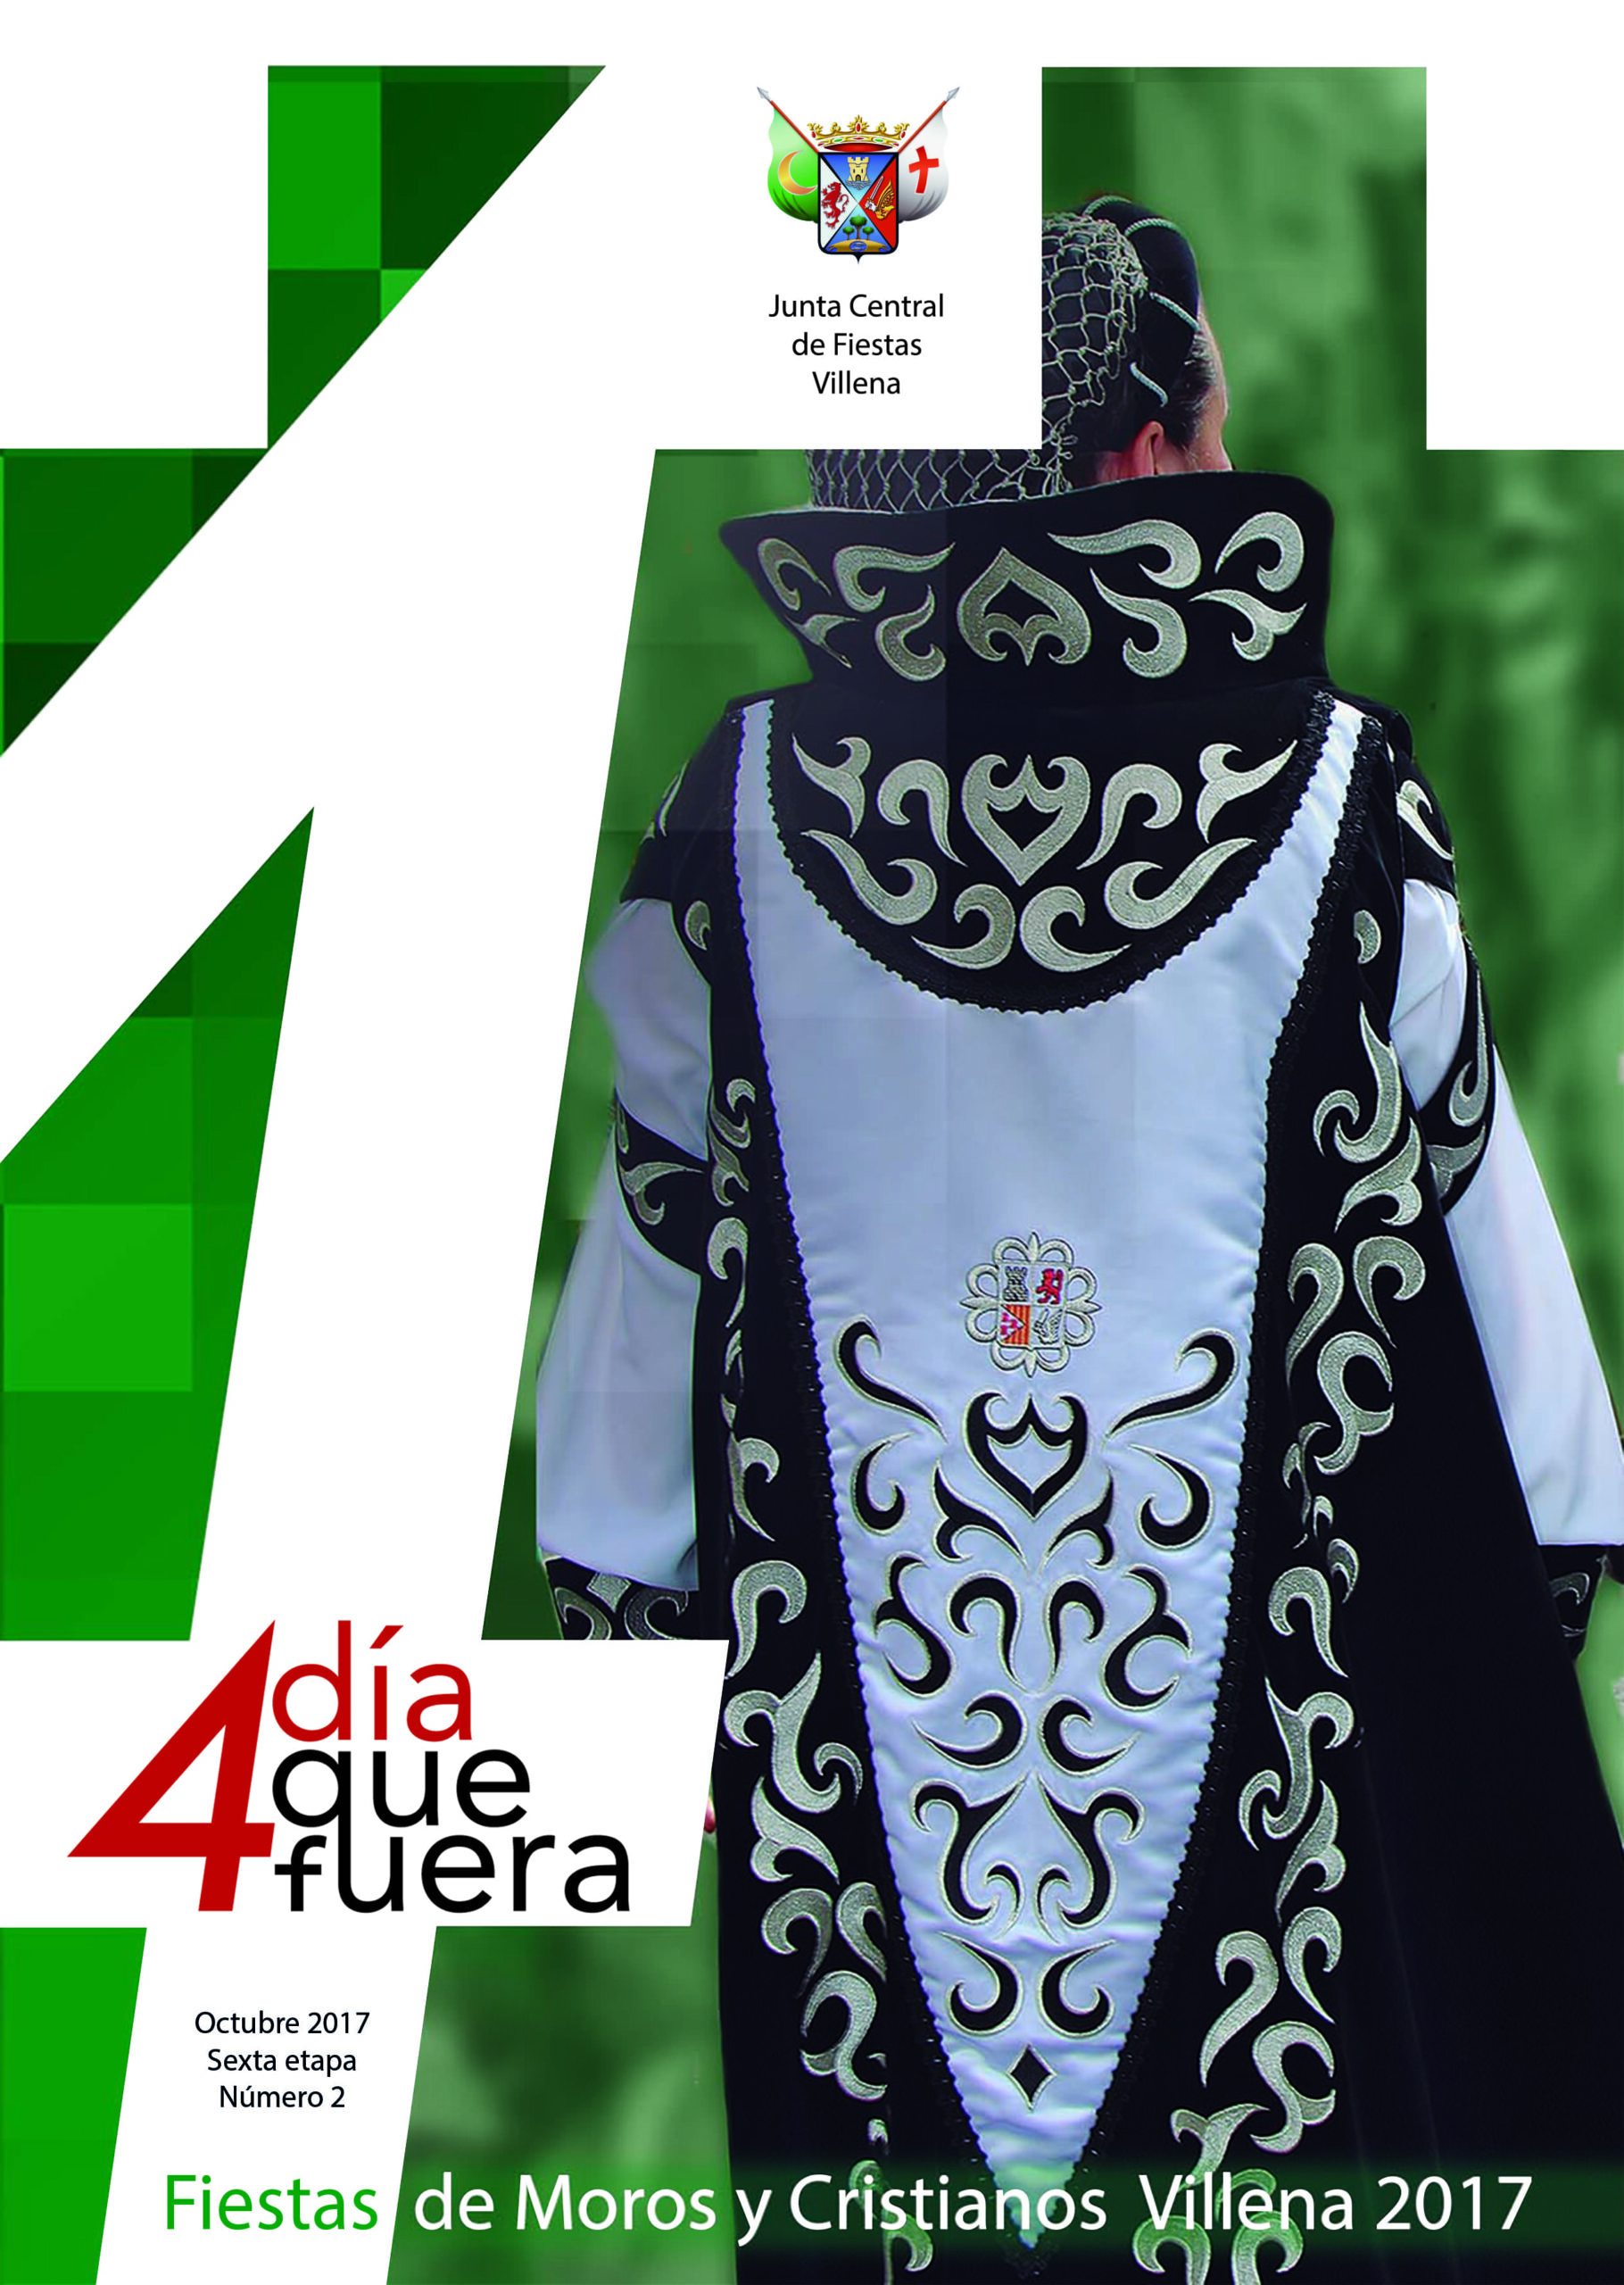 El segundo boletín-revista del “Día 4 Que Fuera”, ya está en los comercios de Villena y en la Junta Central hasta el 15 de diciembre